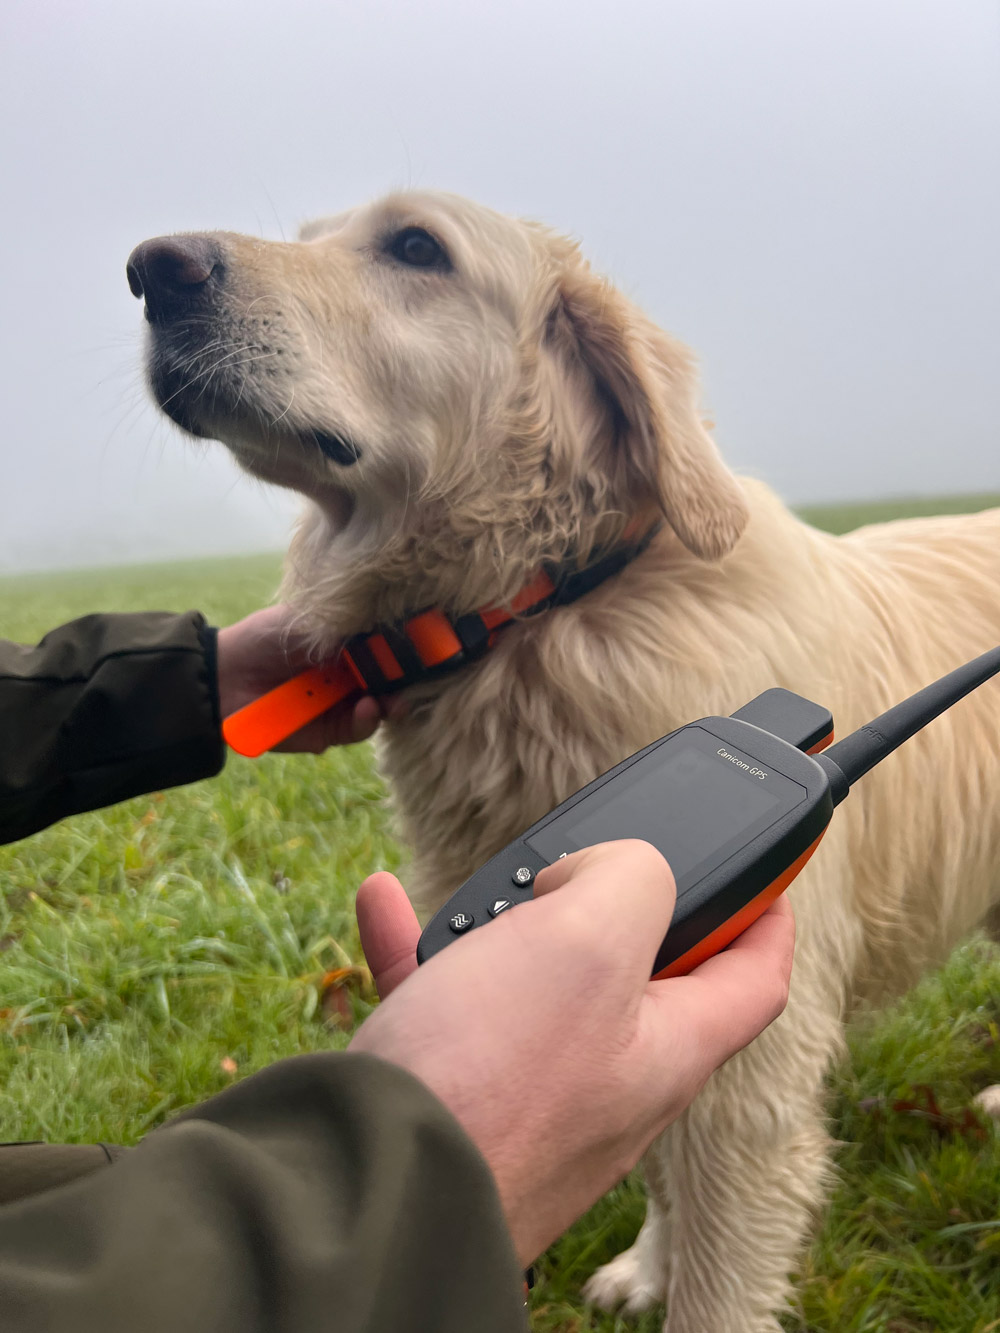 Pack de repérage NUM'AXES CANICOM GPS pour chiens de chasse